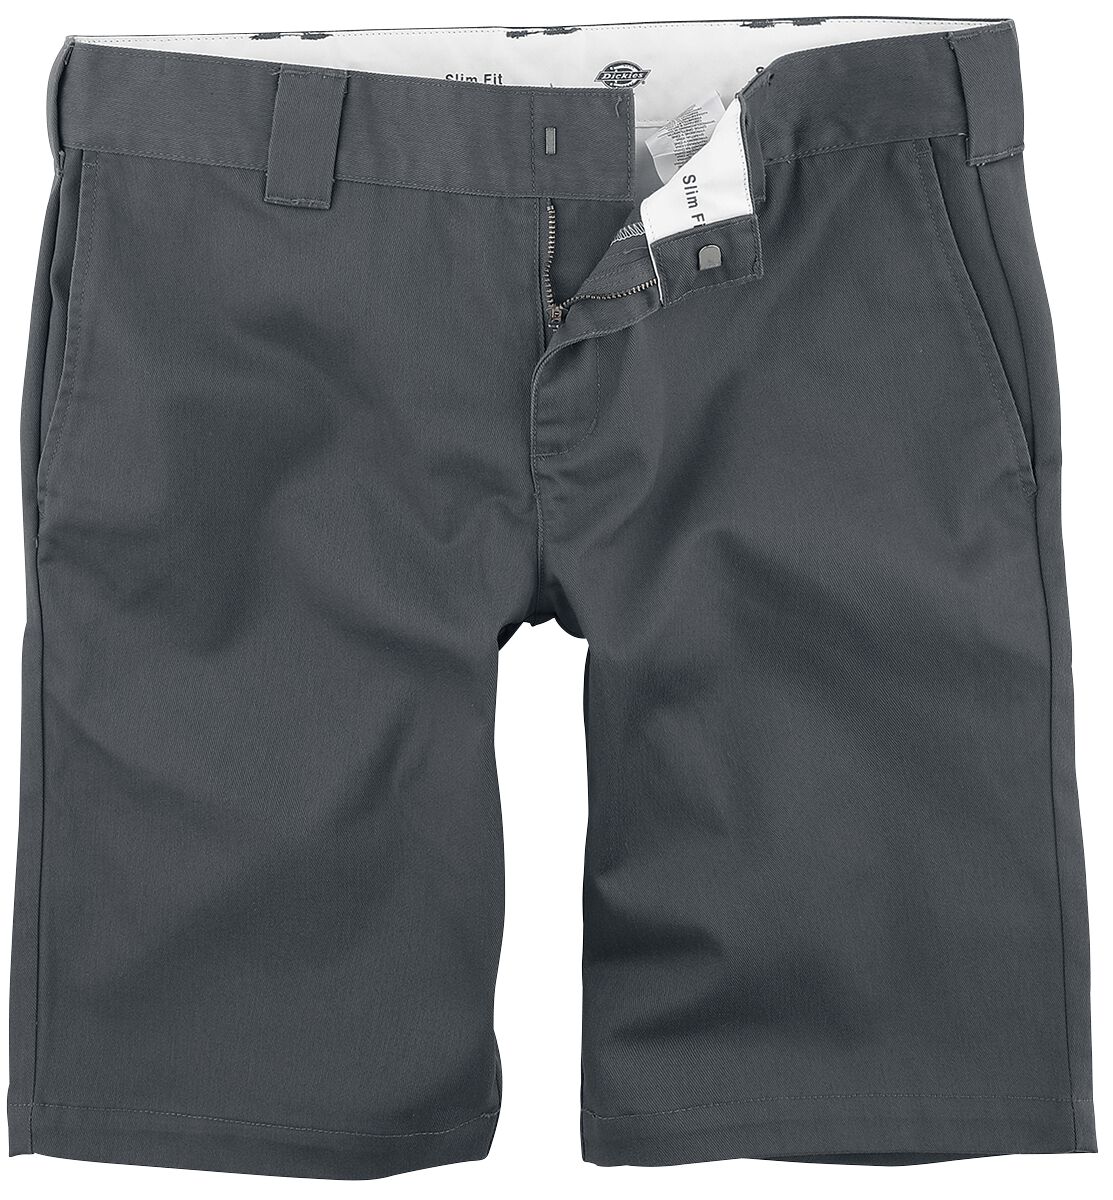 Dickies Short - Slim Fit Short - 30 bis 40 - für Männer - Größe 38 - charcoal